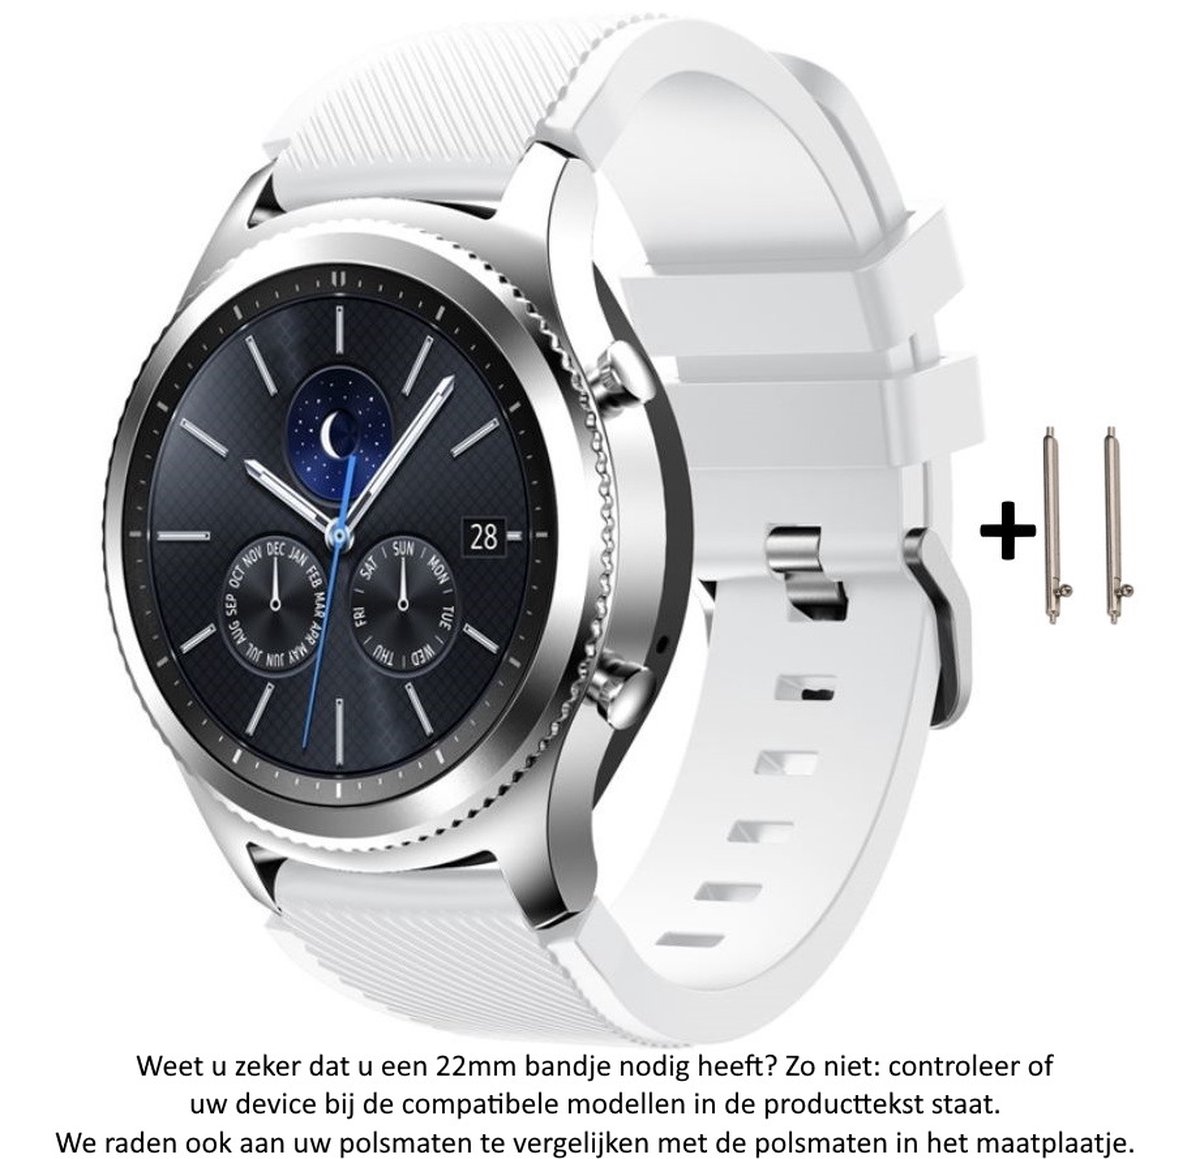 Wit Siliconen Bandje geschikt voor 22mm smartwatches van verschillende grote merken (zie lijst met compatibele modellen in producttekst) - Maat: zie maatfoto - 22 mm white rubber smartwatch strap